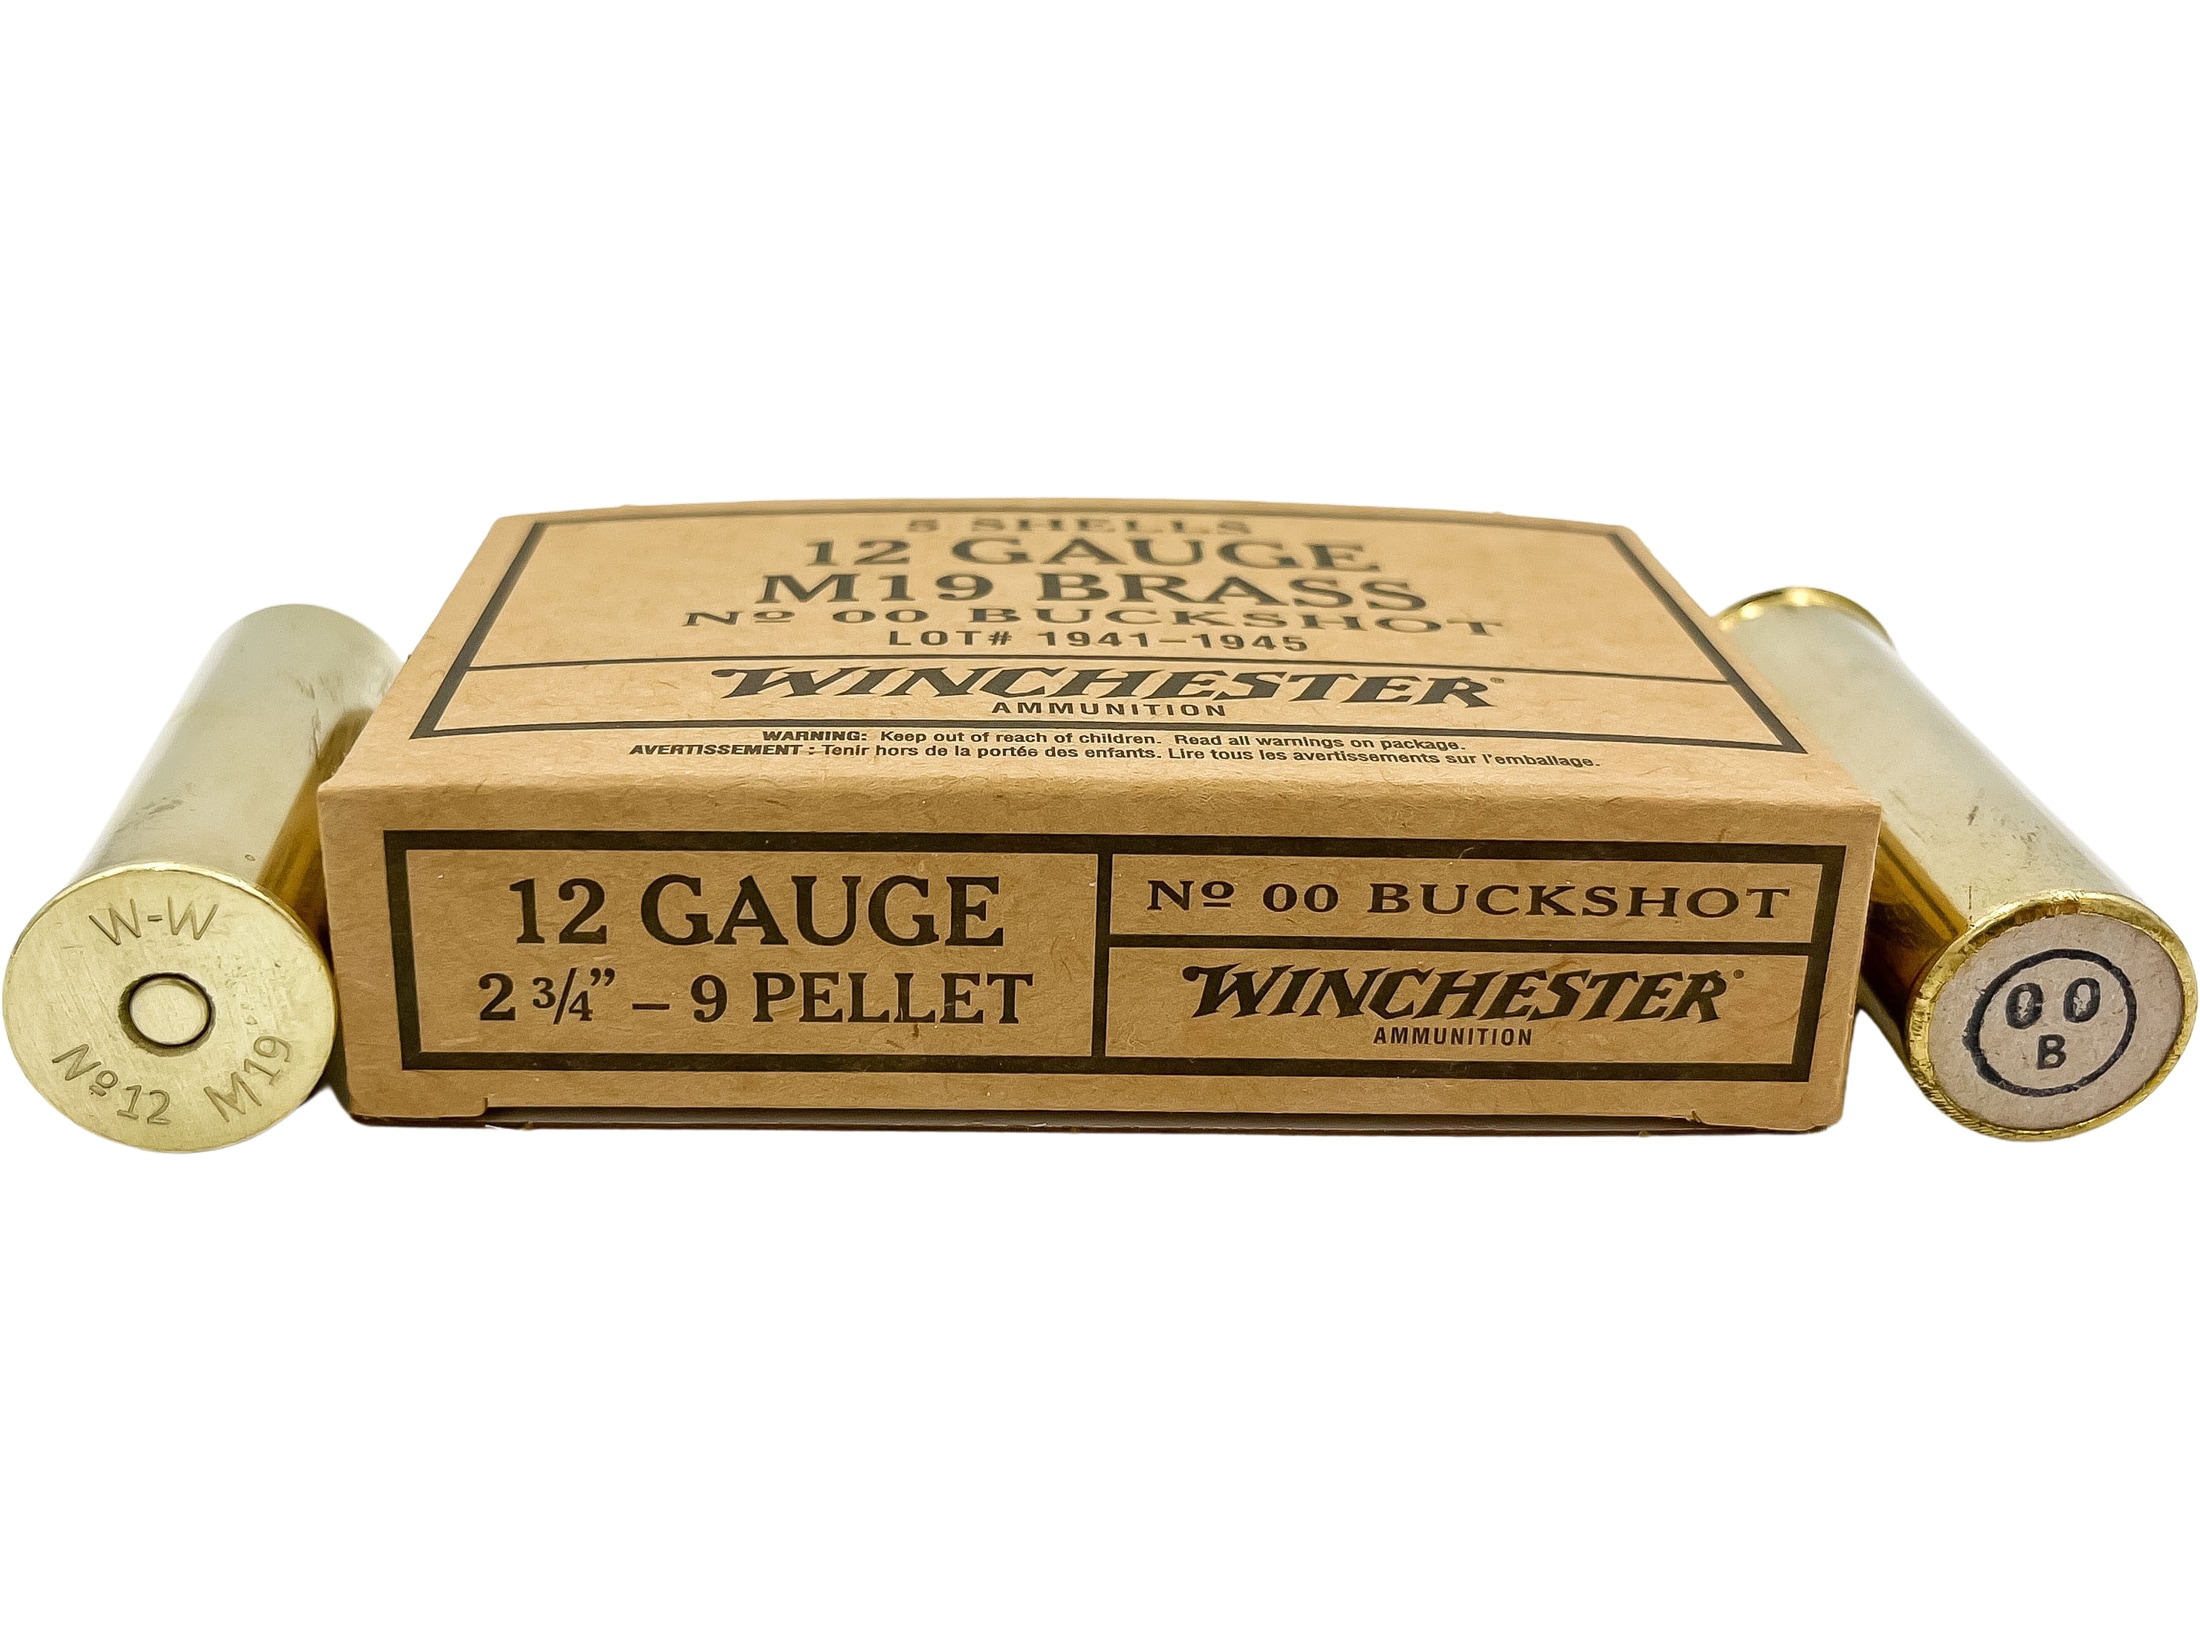  Bottle Stopper Corks 12 gauge Brass Gun Ammo Bullet Shotgun  Shell Party Barware Household Gift : Handmade Products